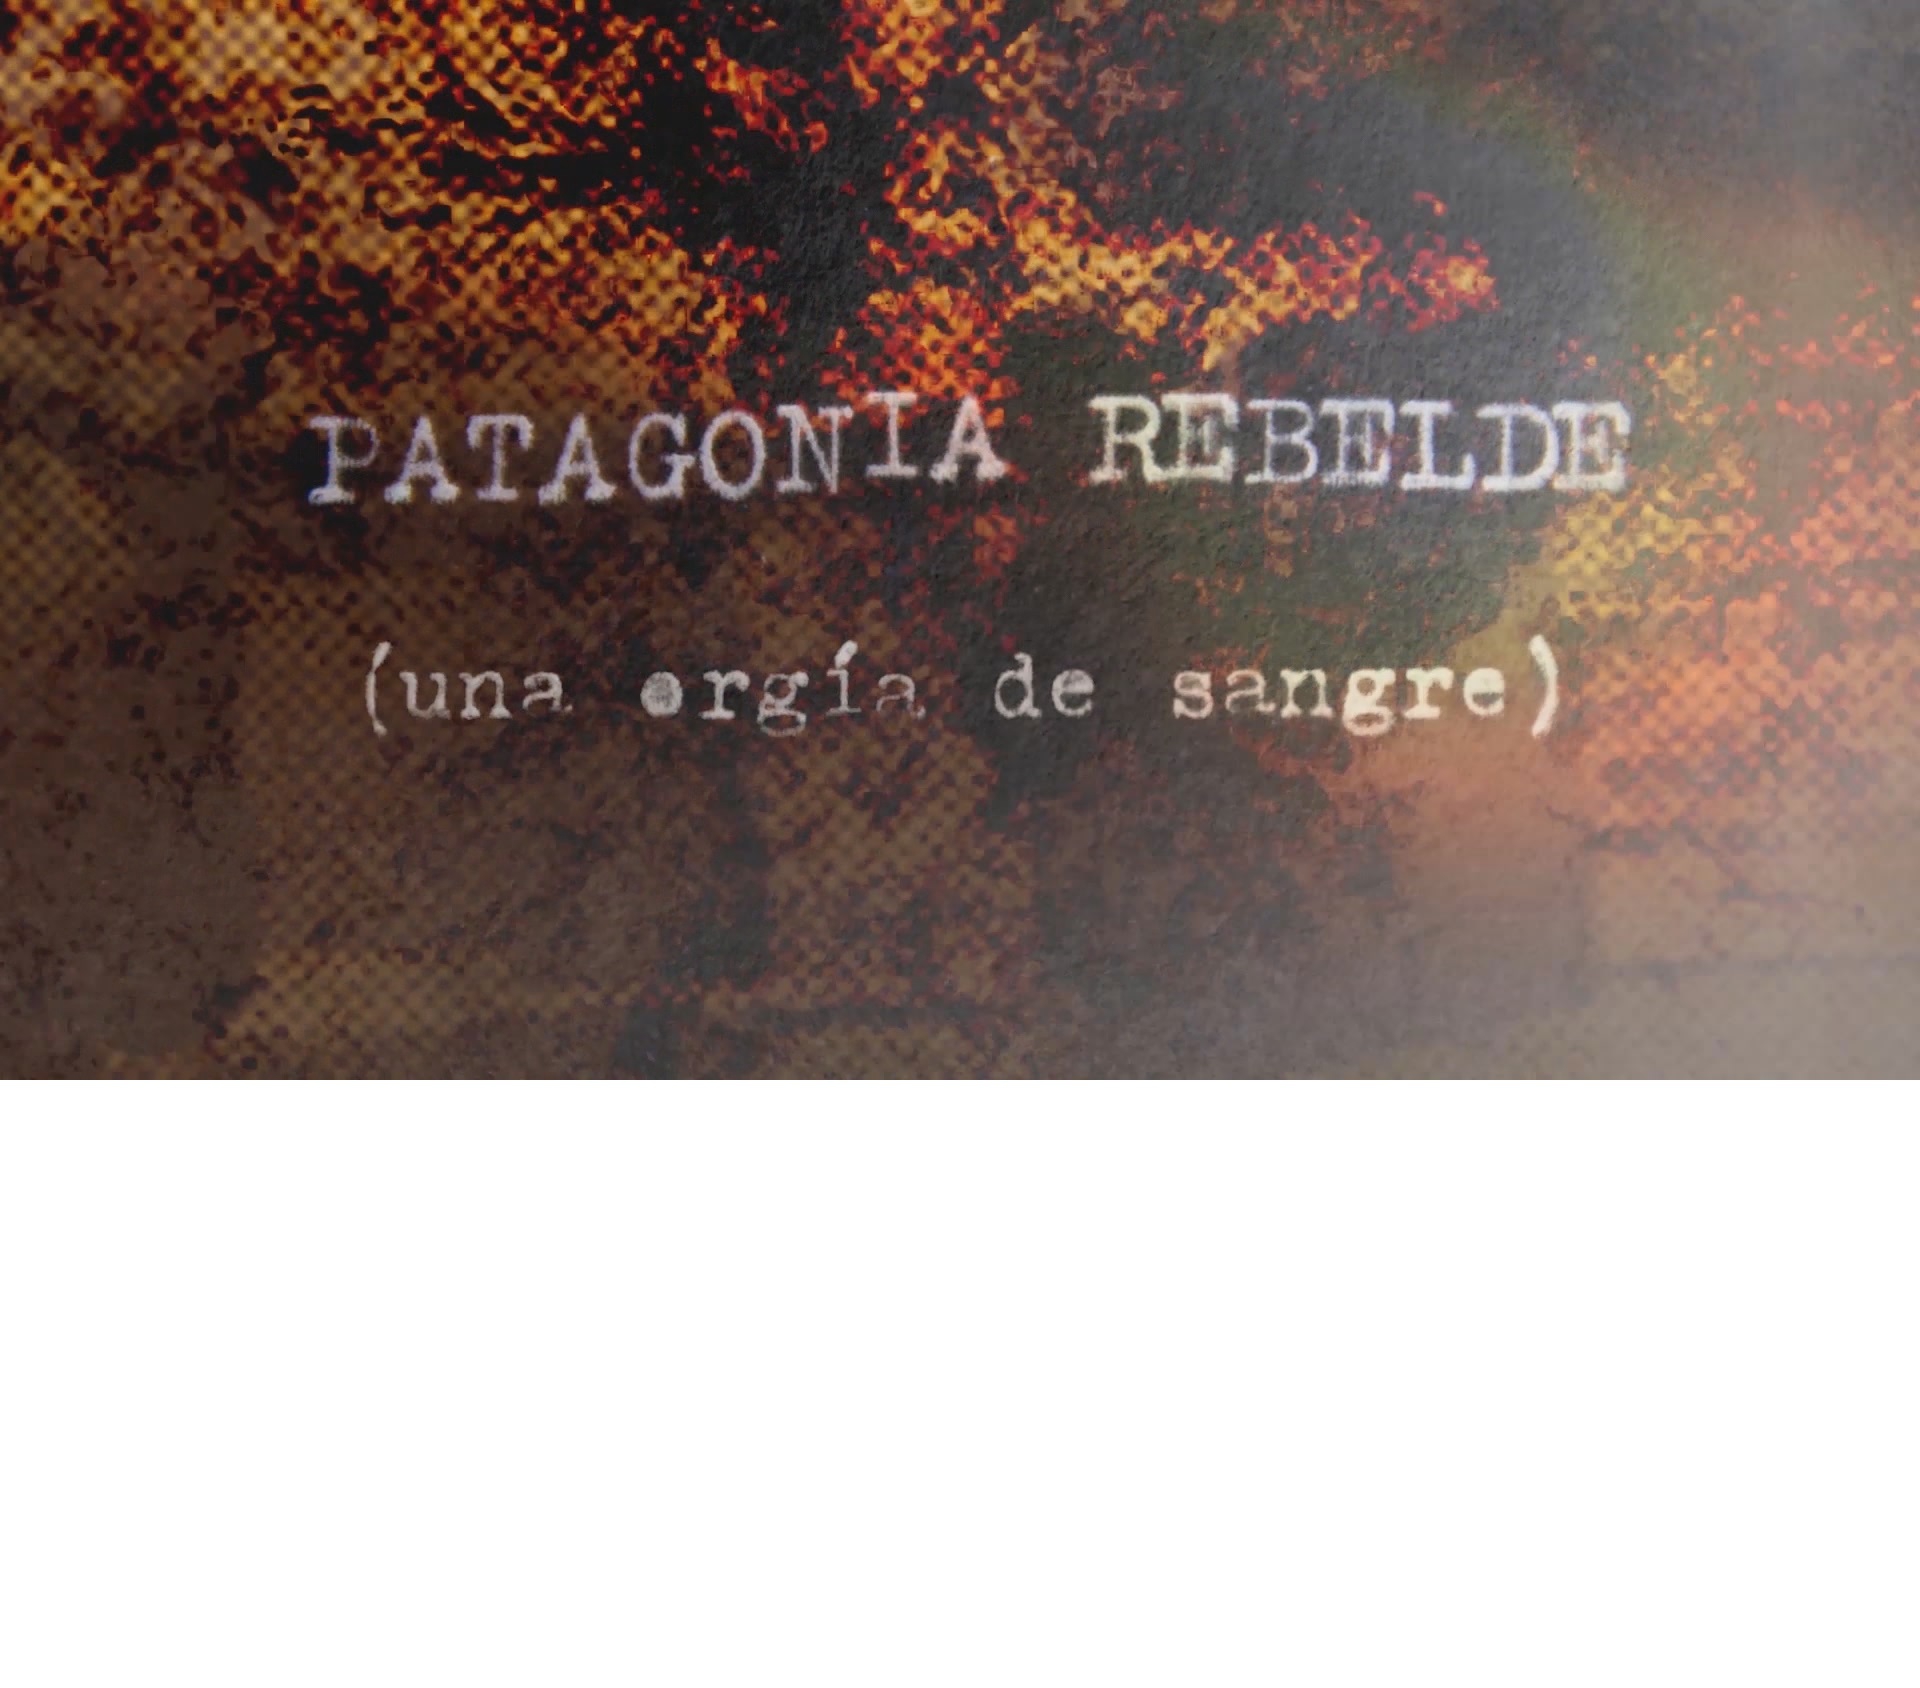 Patagonia Rebelde